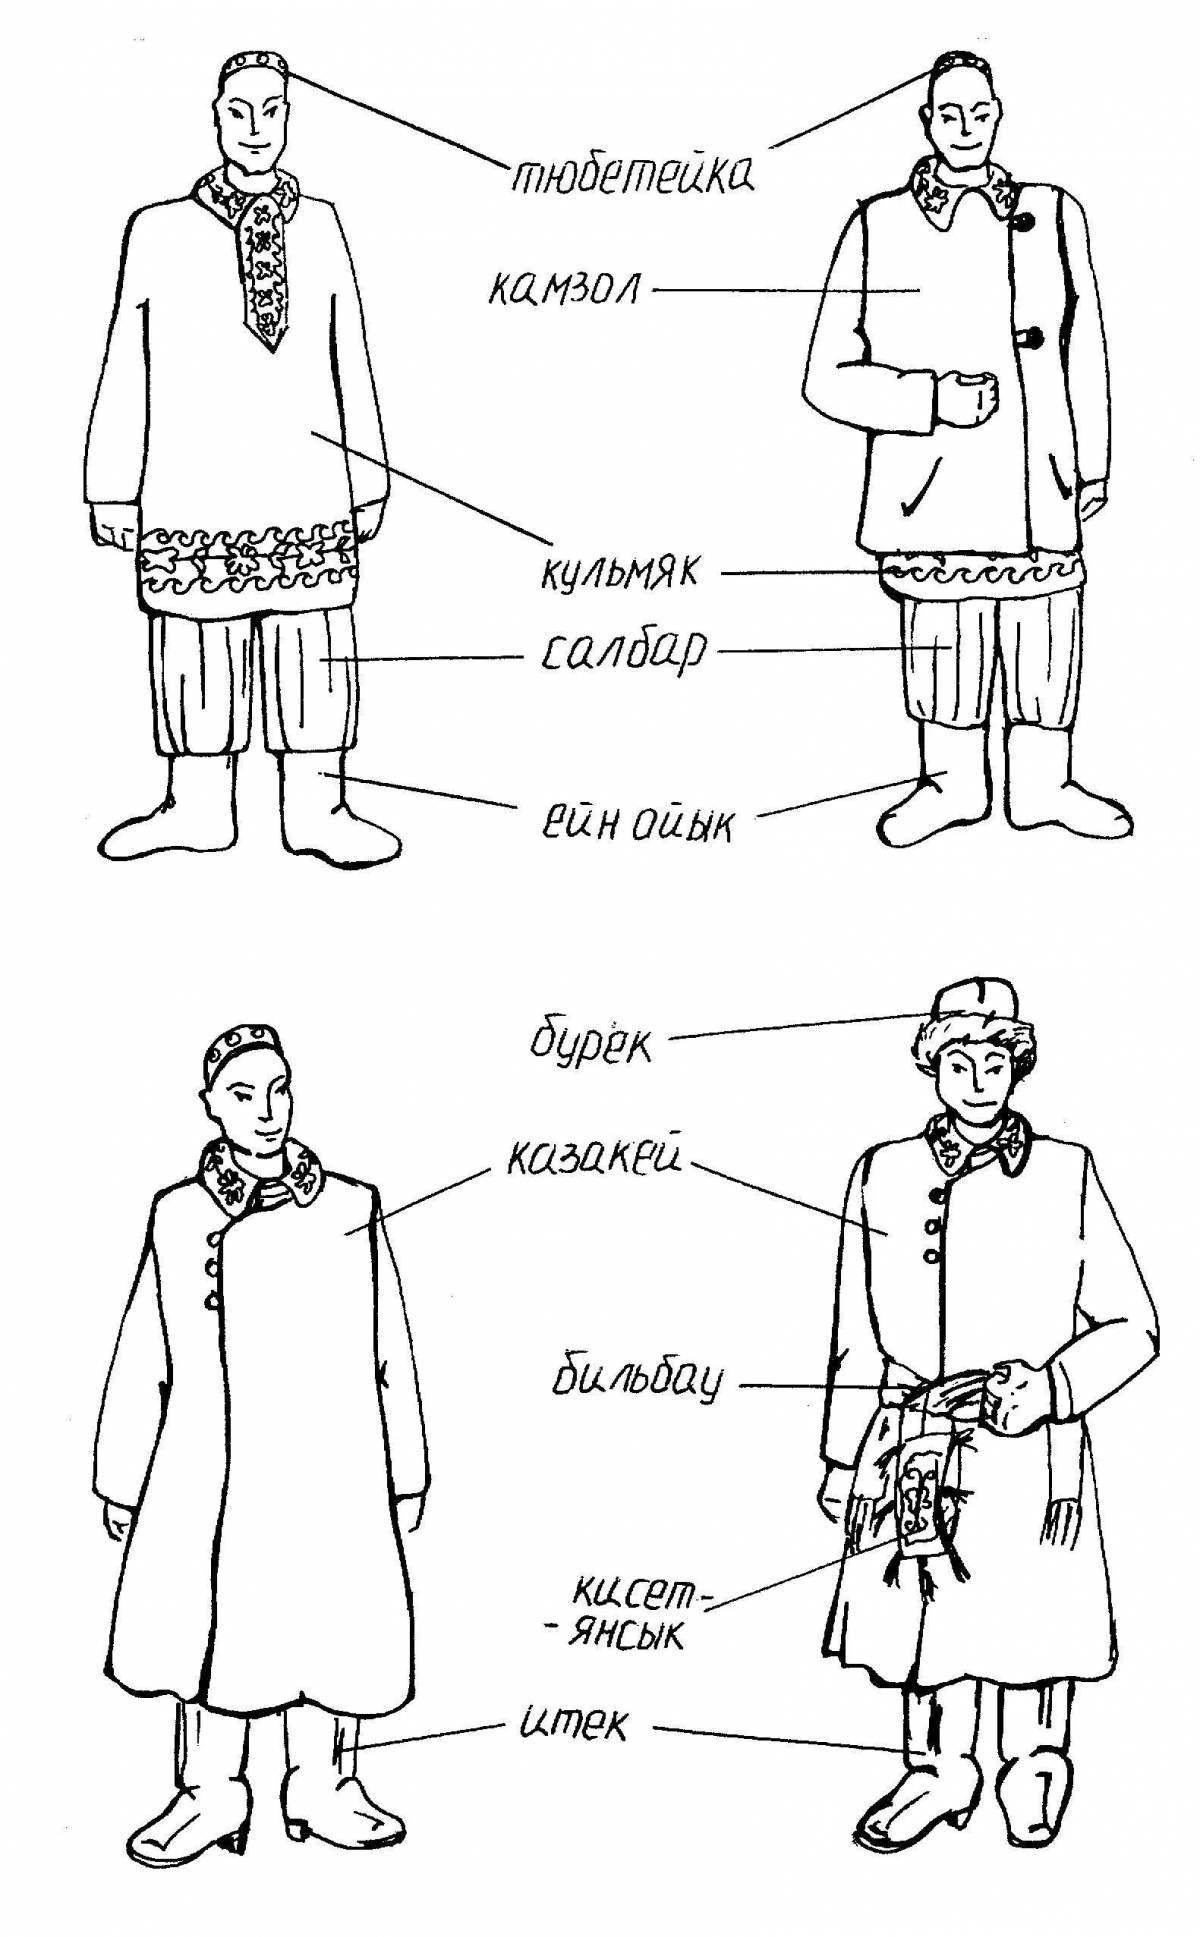 Exquisite Russian folk costume for men